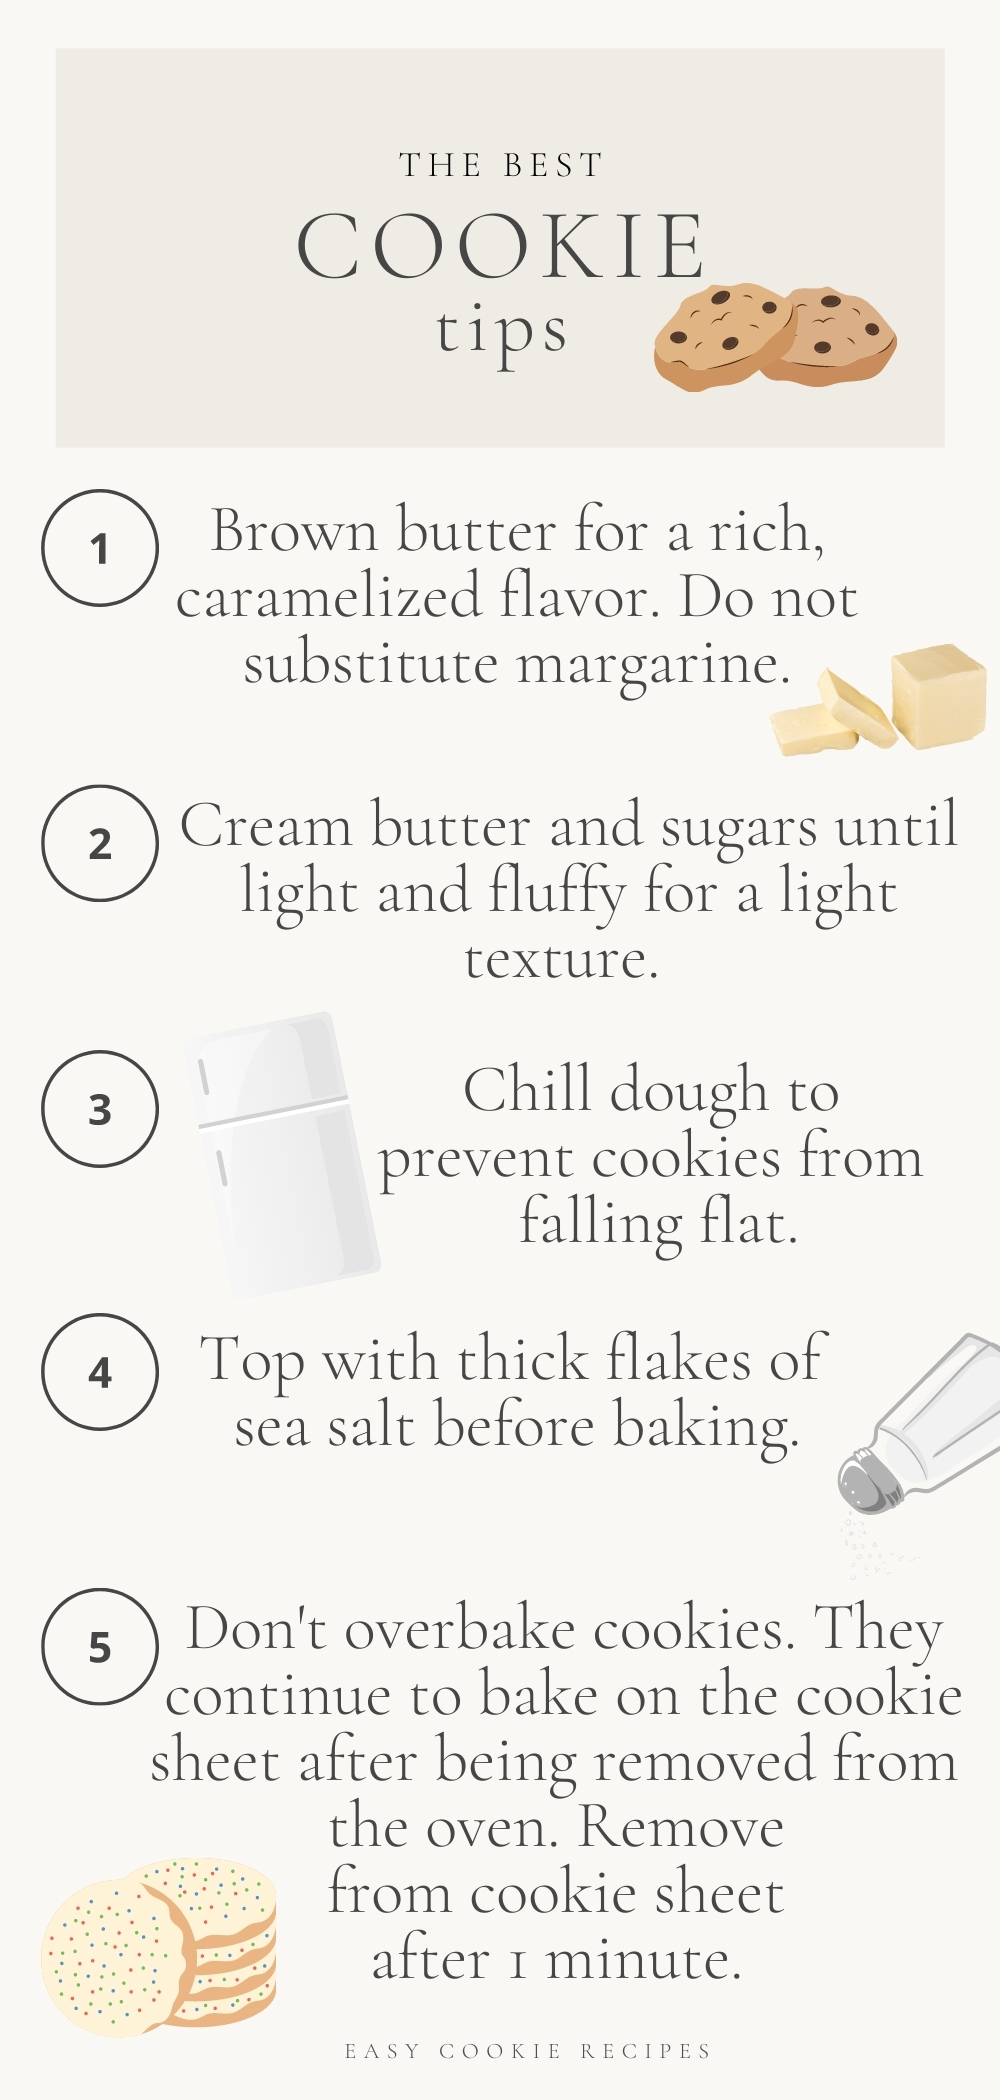 A graphic describing cookie tips